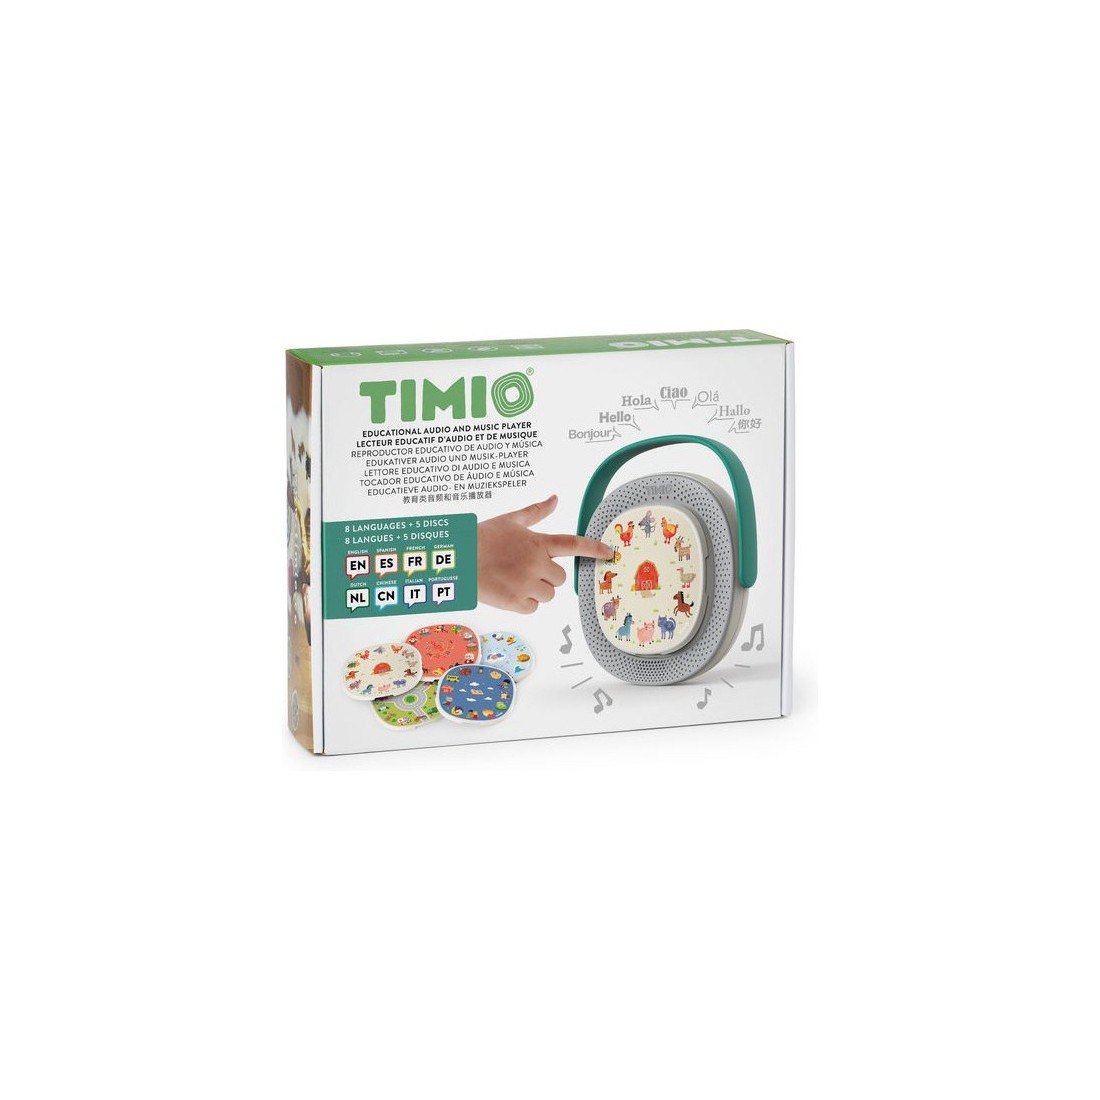 Découvrez TIMIO, le lecteur audio éducatif et interactif pour